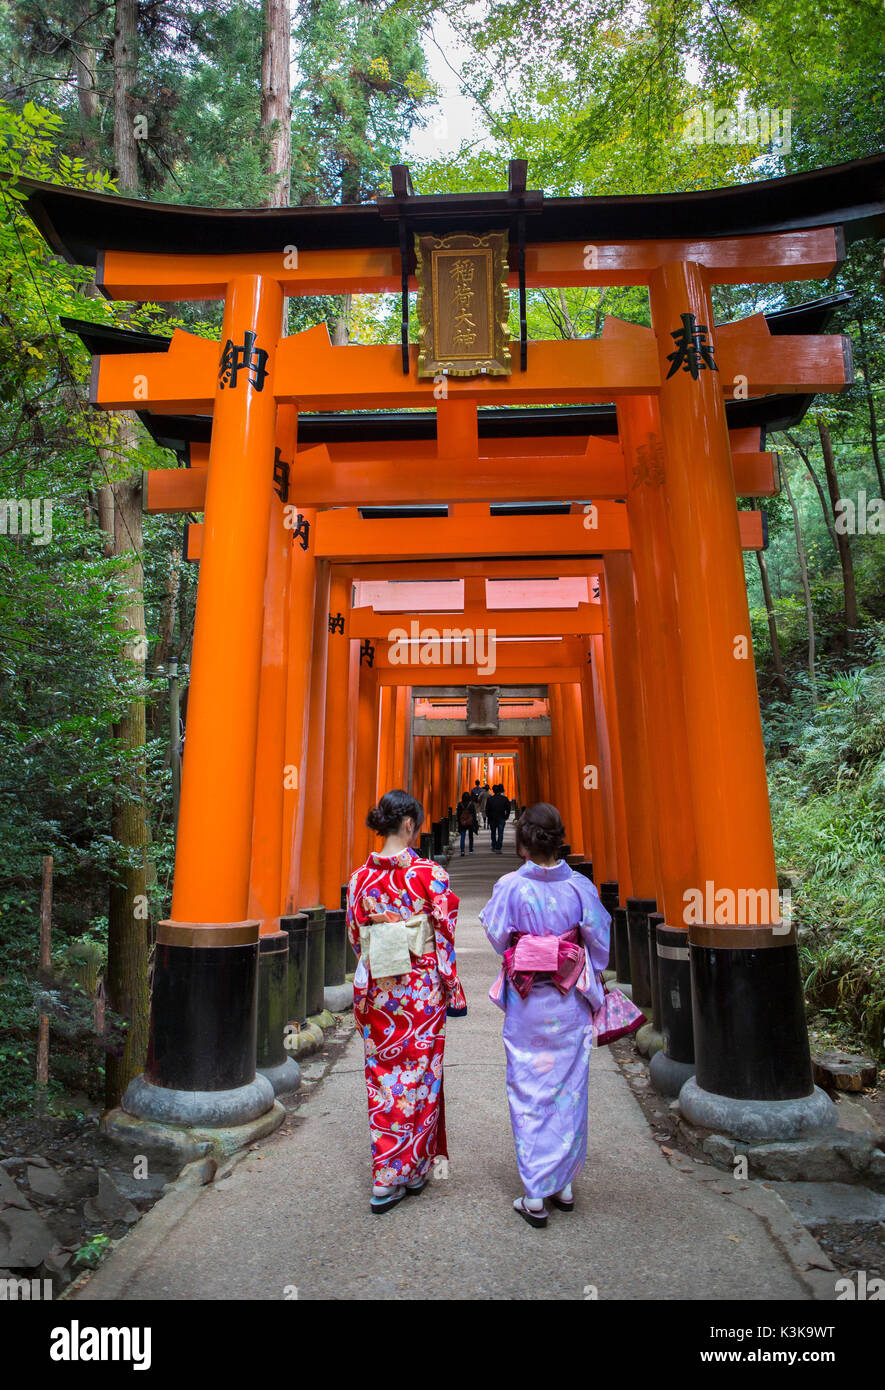 La ciudad de Kyoto, Japón,el Monasterio Fushimi Inari tori puertas Foto de stock